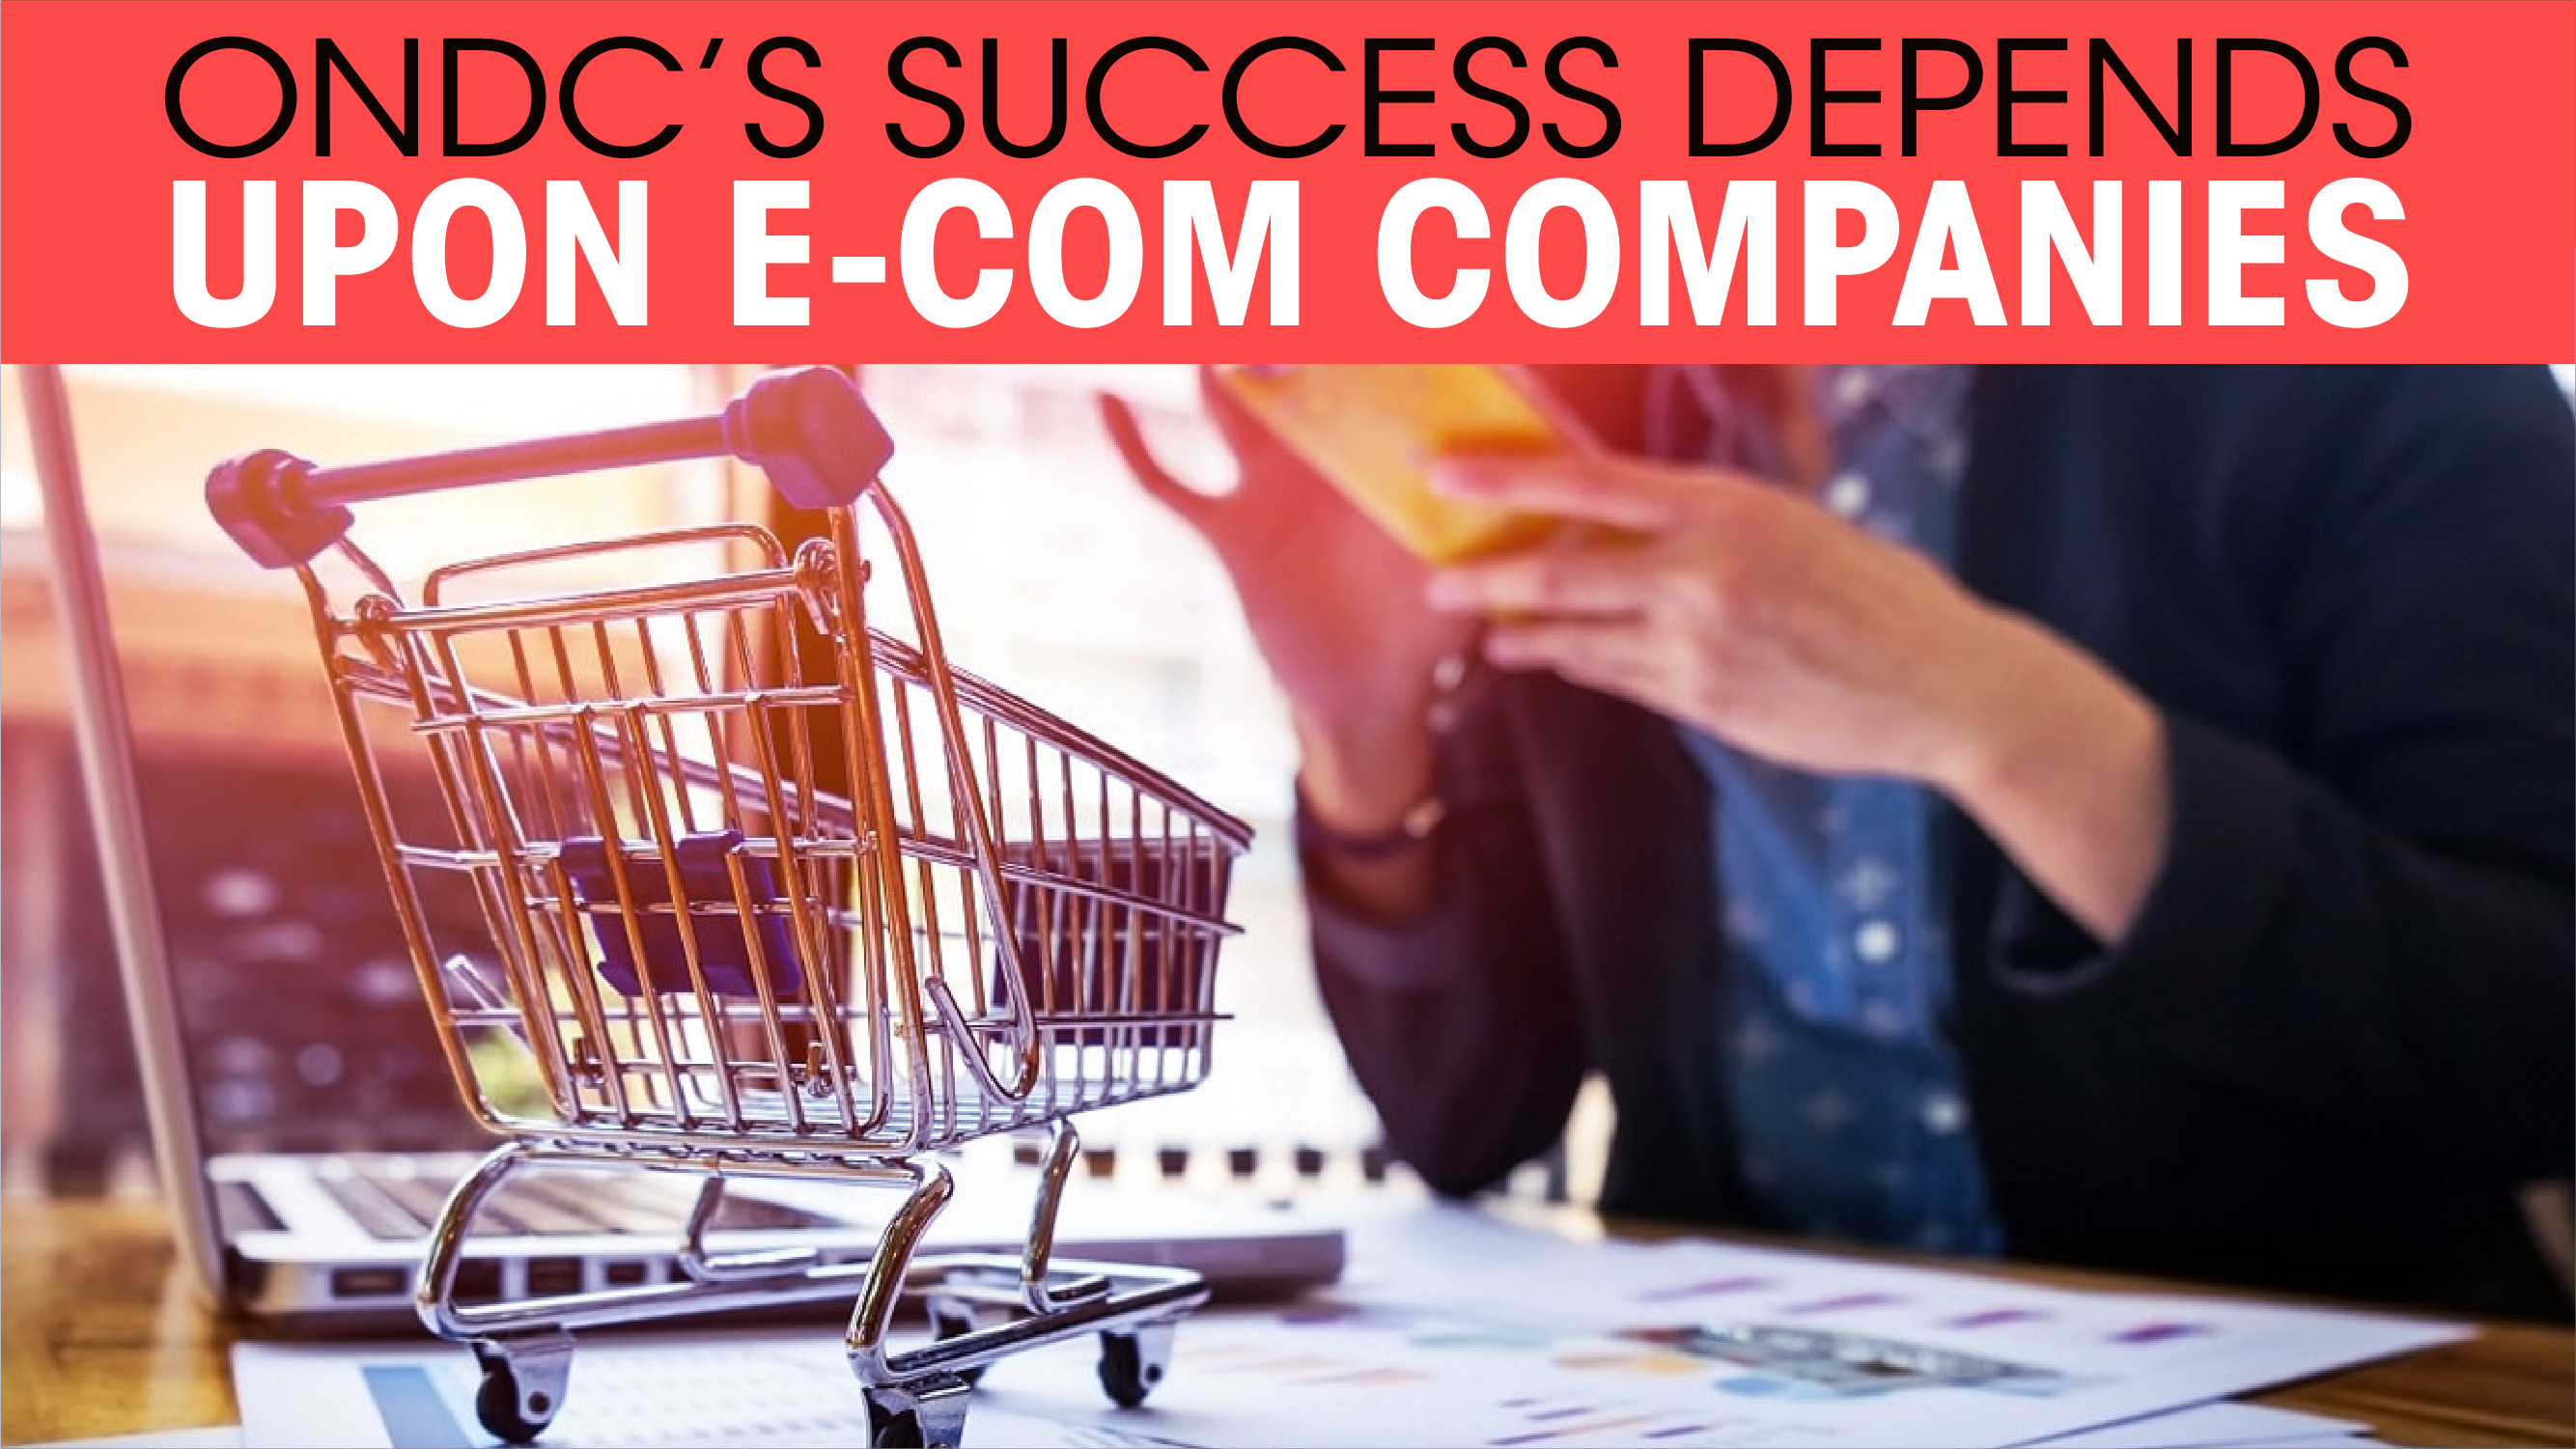 ONDC’s success depends upon e-com companies